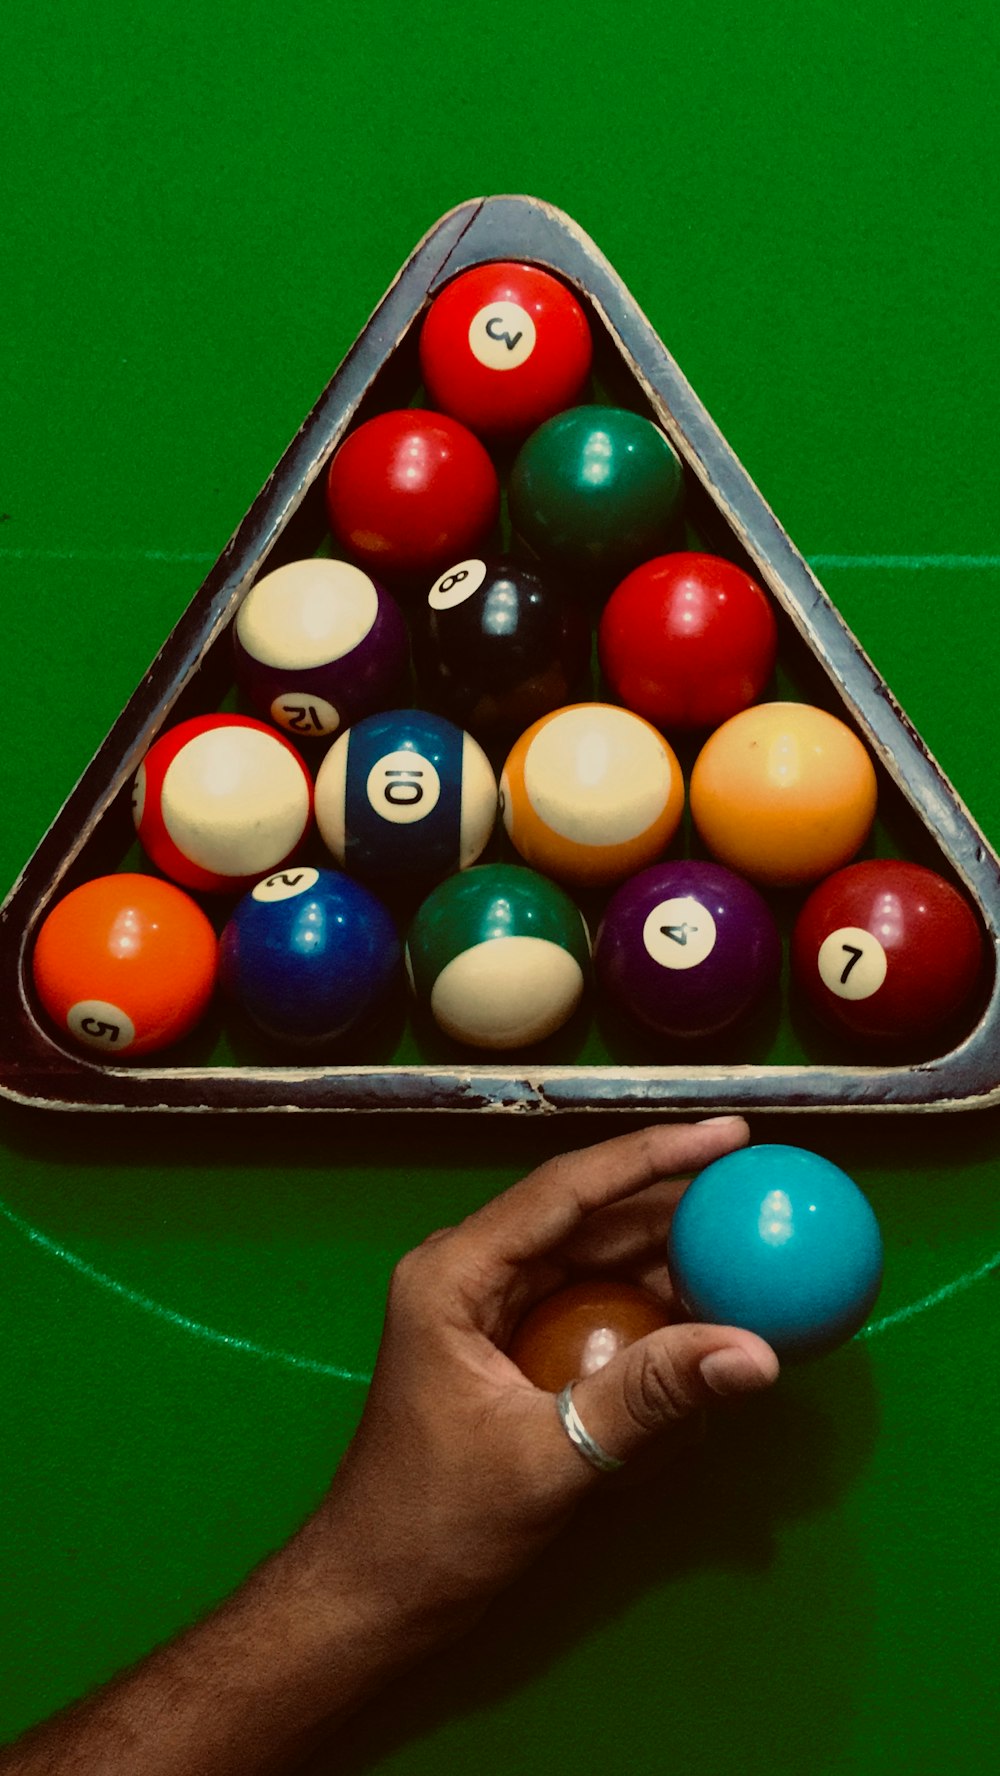 8 pool ball set